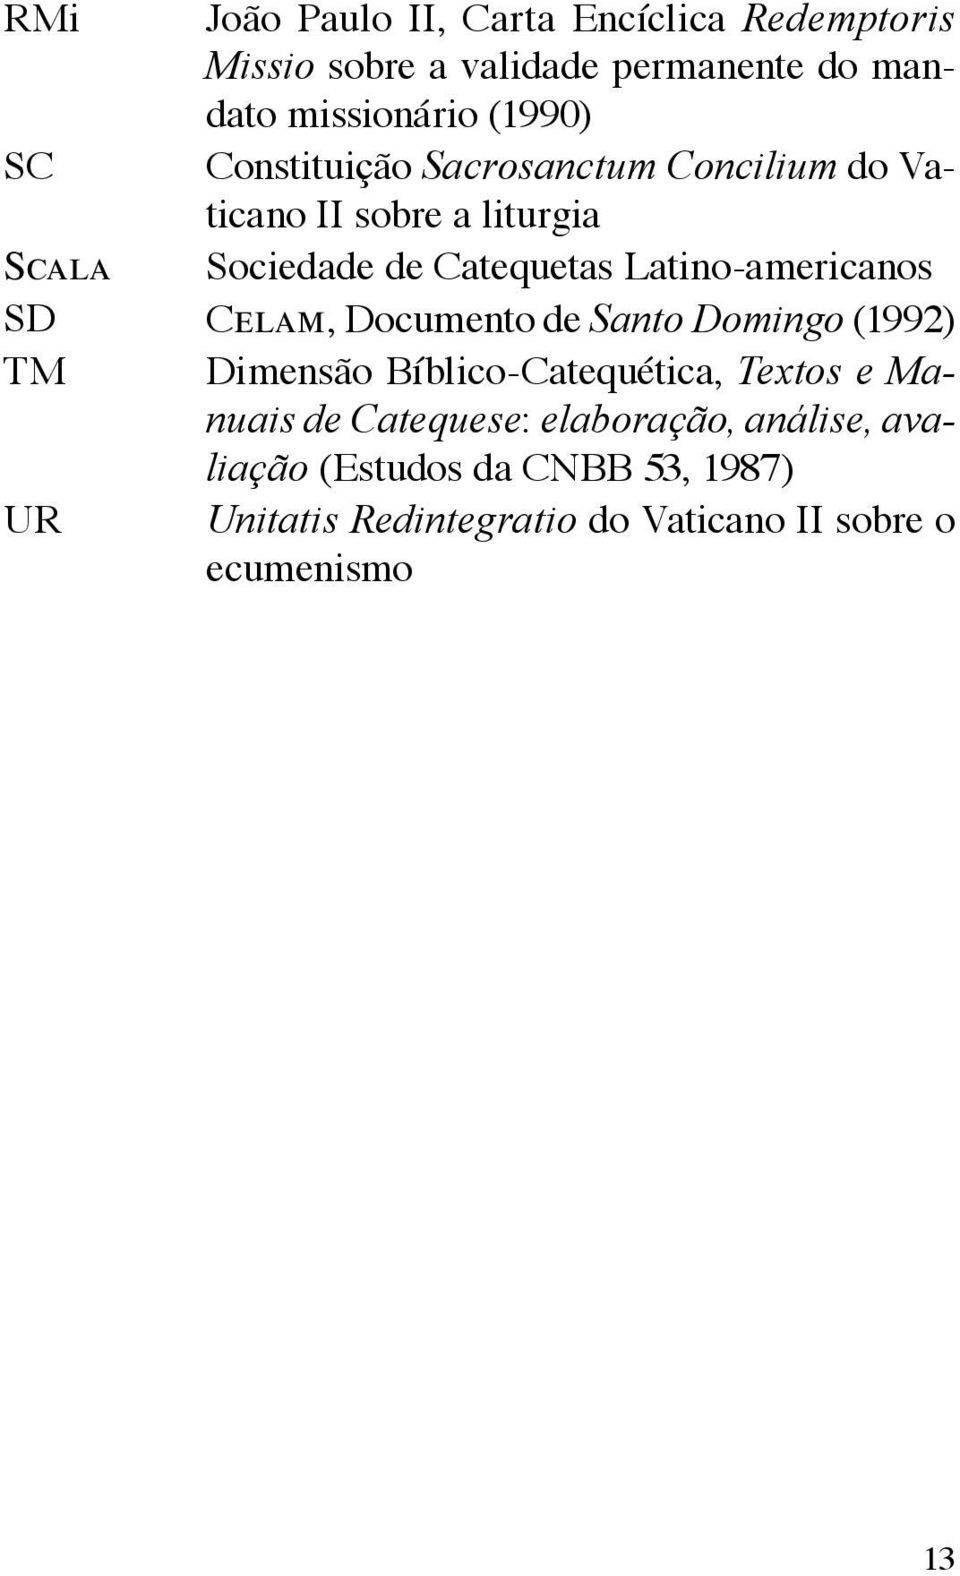 Latino-americanos SD Celam, Documento de Santo Domingo (1992) TM Dimensão Bíblico-Catequética, Textos e Manuais de